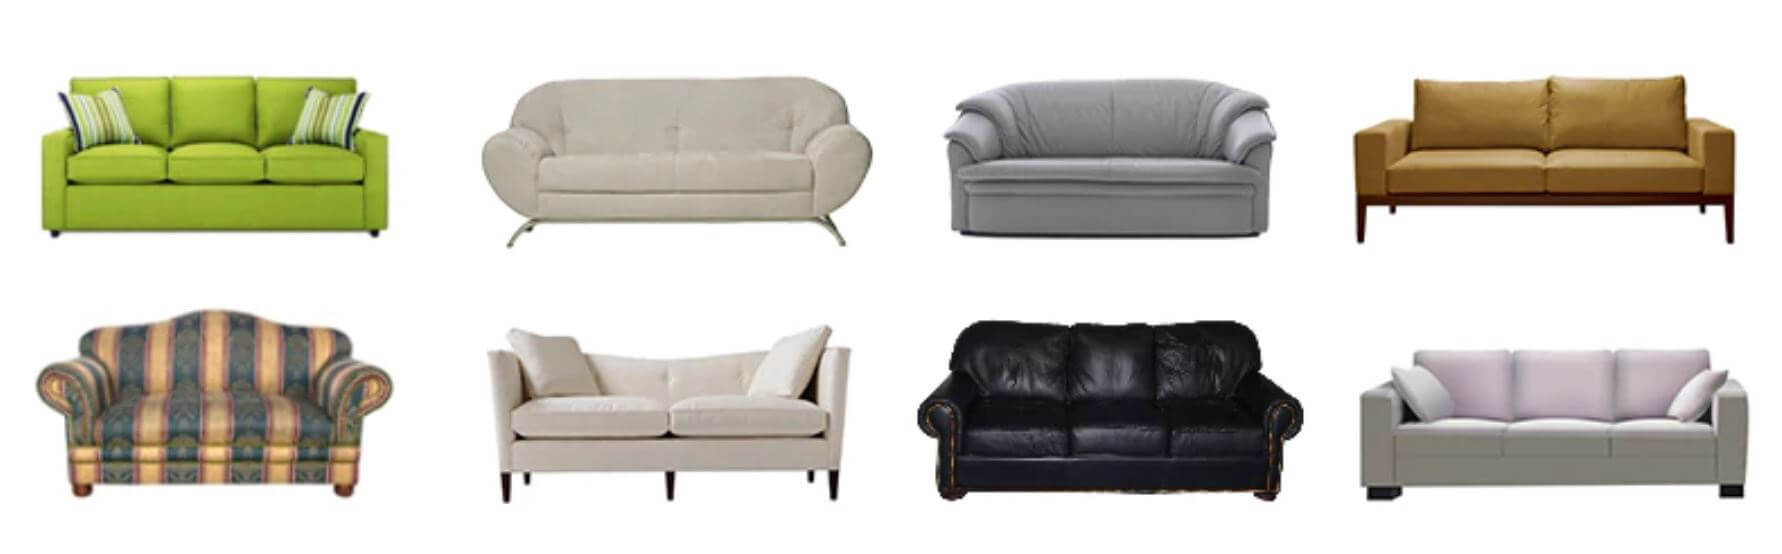 Modelos y tipos de sofás compatibles con nuestra Funda de Sofá extensible